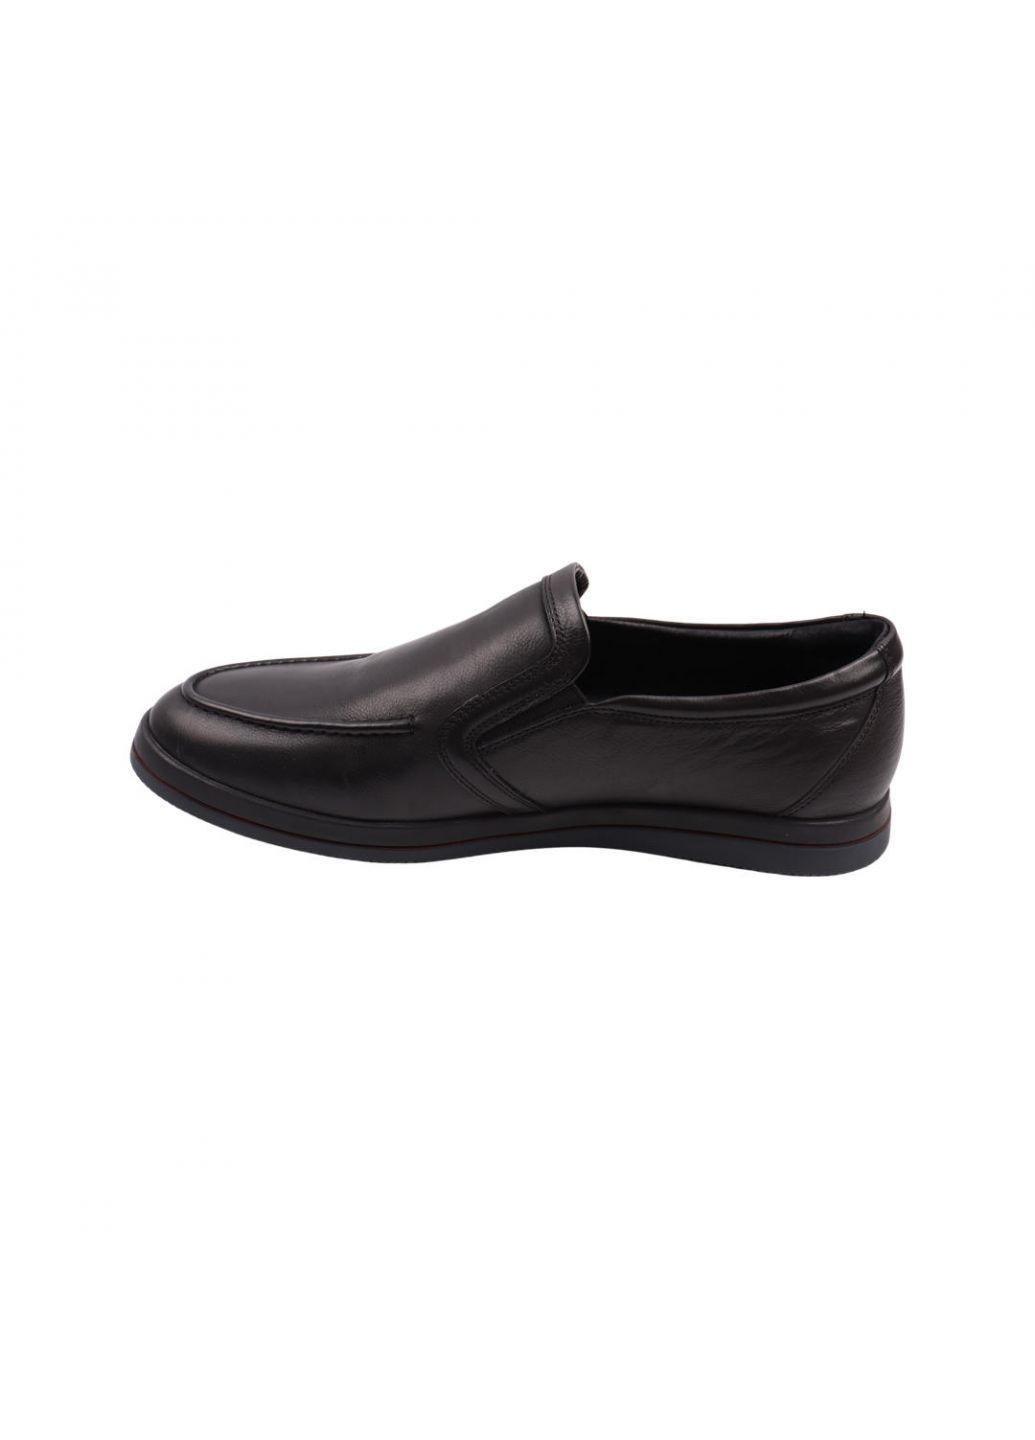 Туфлі чоловічі чорні натуральна шкіра Anemone 237-22dtc (257439504)